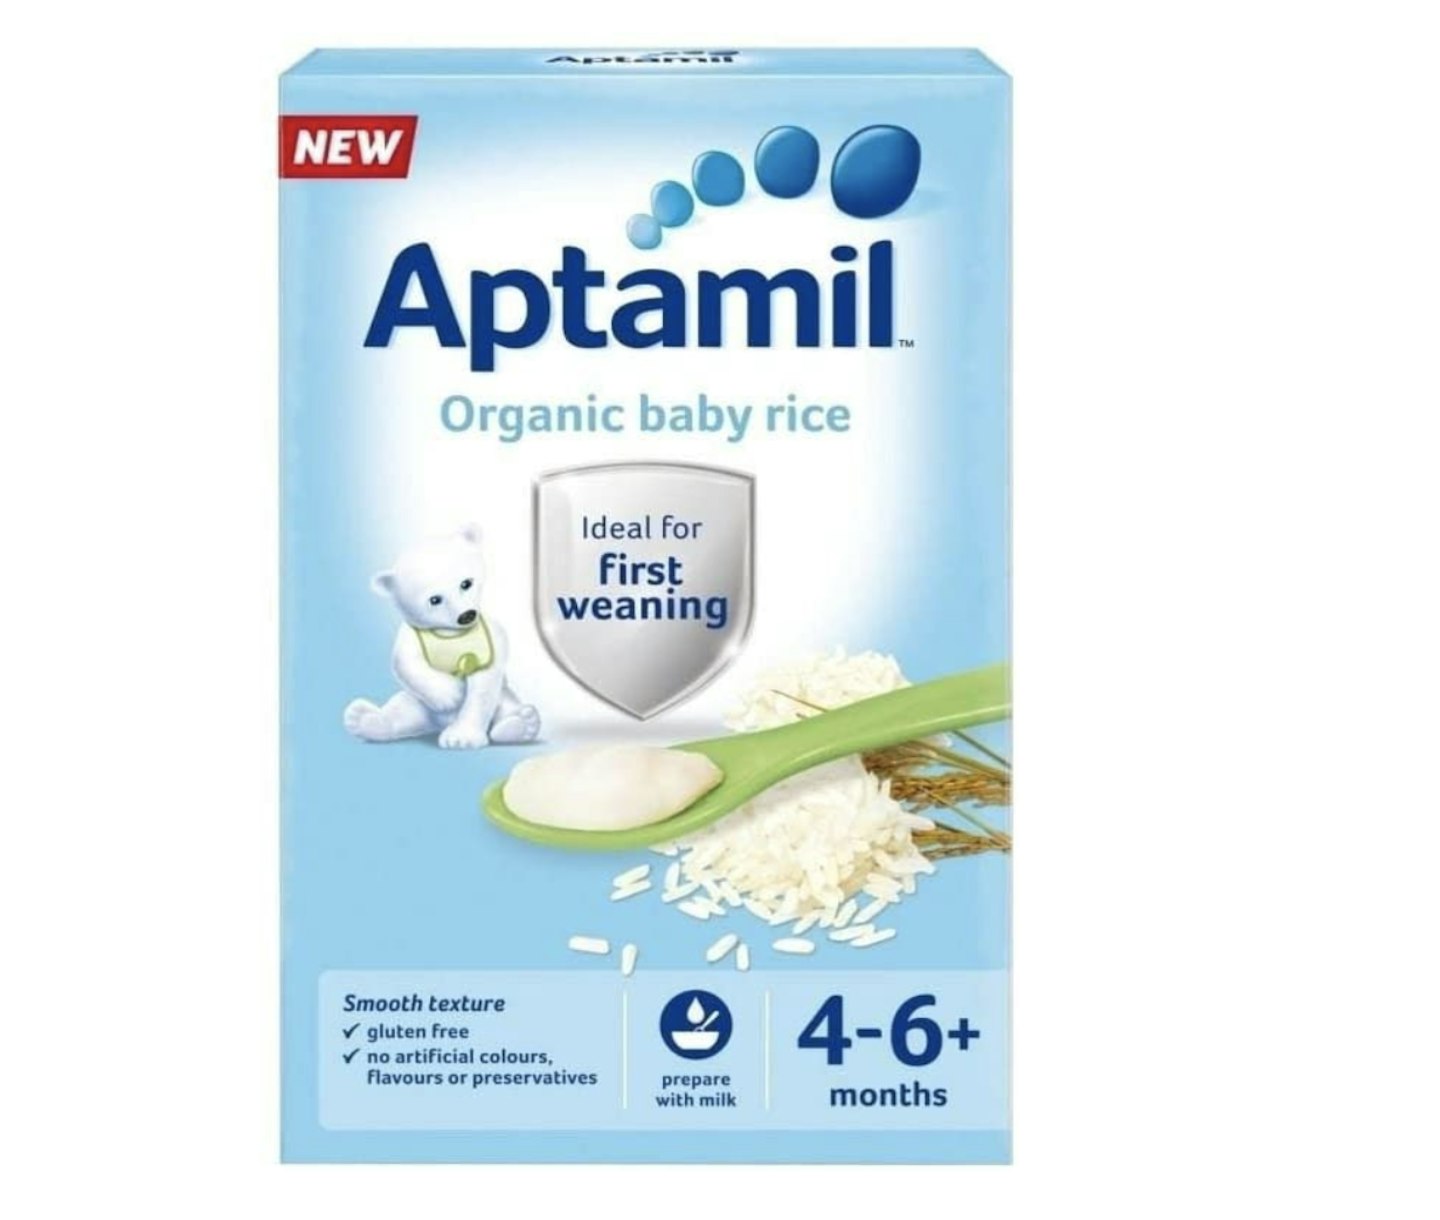 Aptamil baby rice